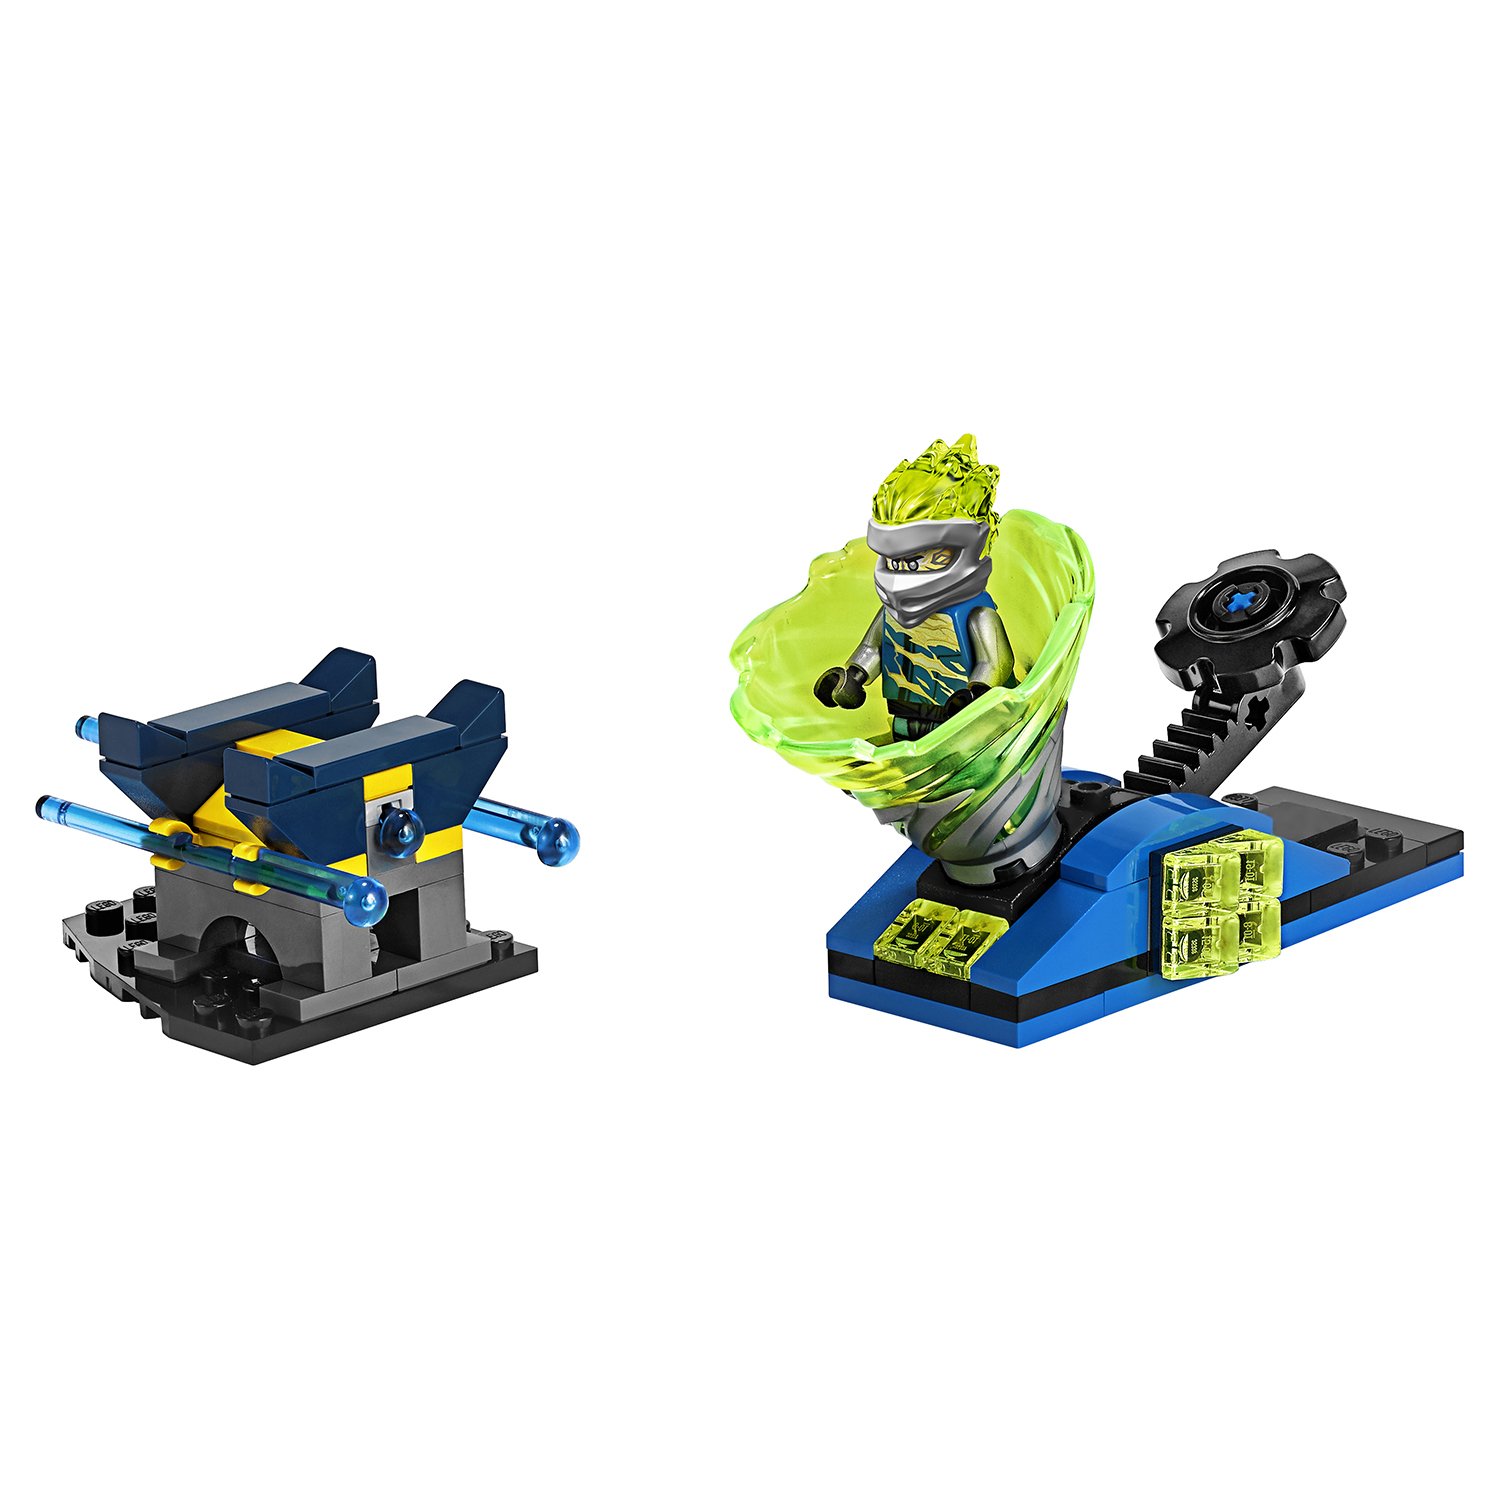 Lego Ninjago 70682 Бой мастеров кружитцу — Джей